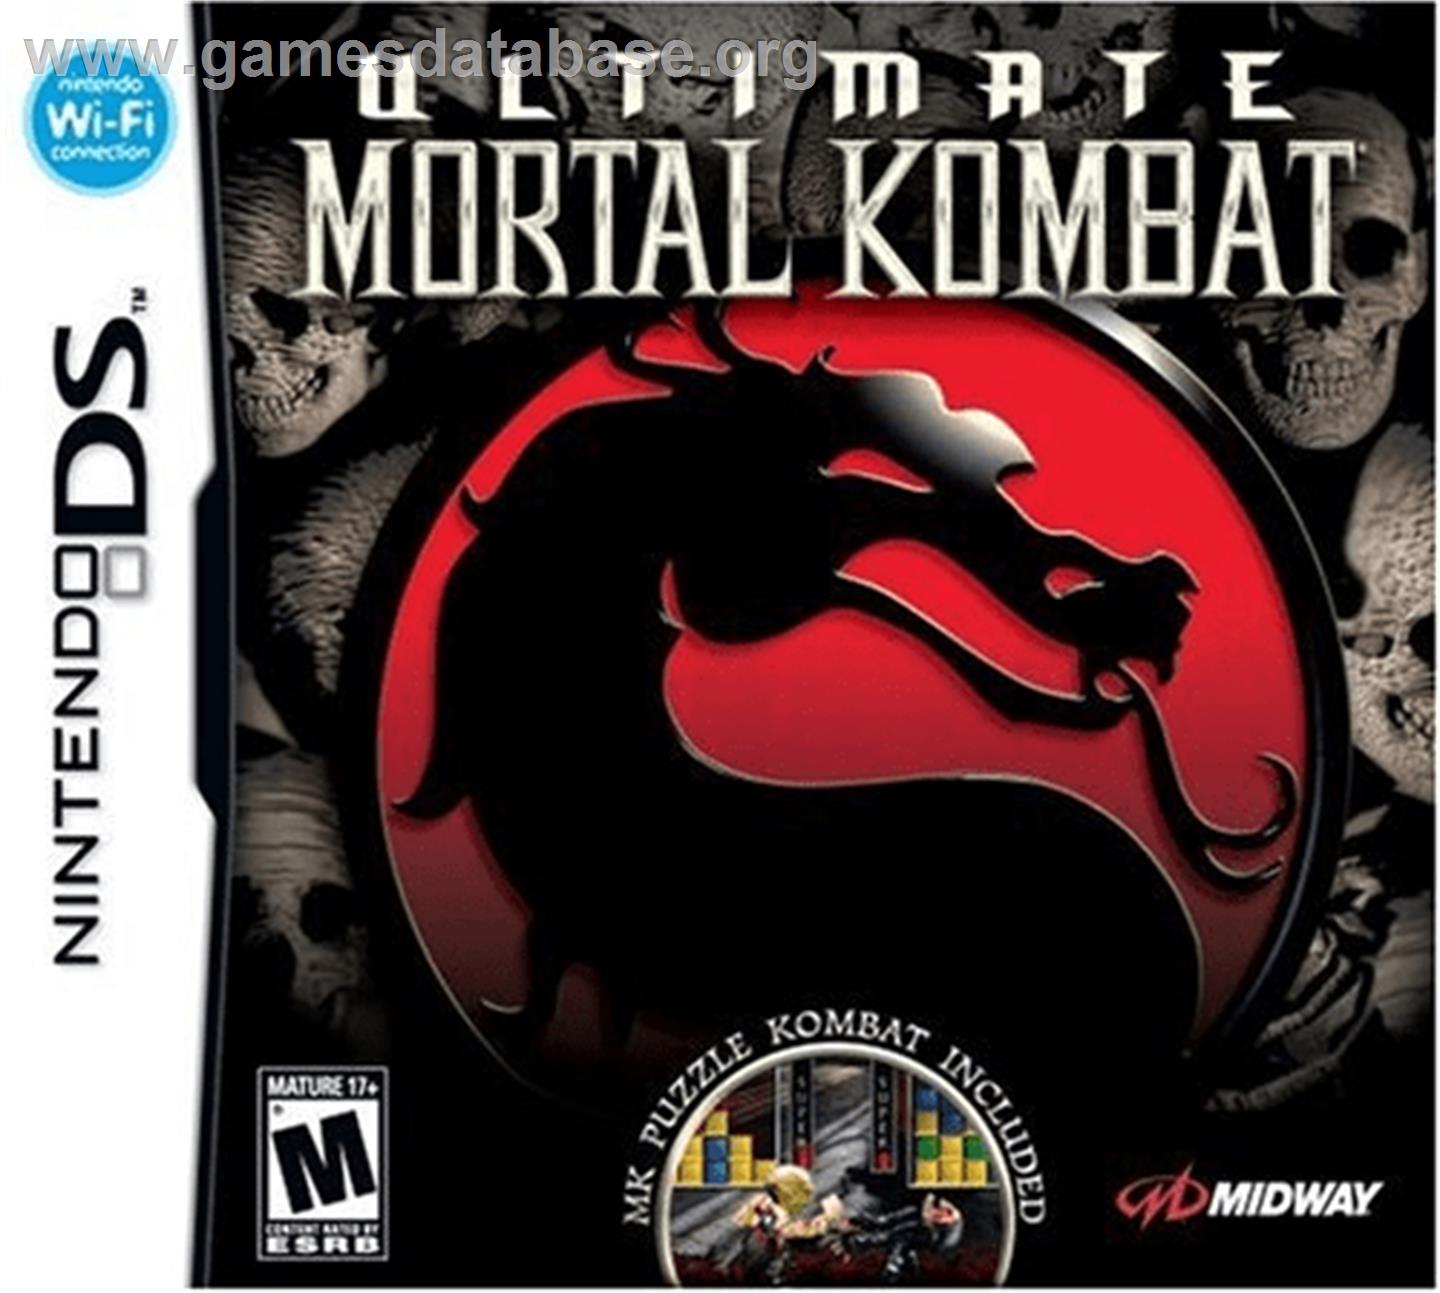 Ultimate Mortal Kombat 3 - Nintendo DS - Artwork - Box